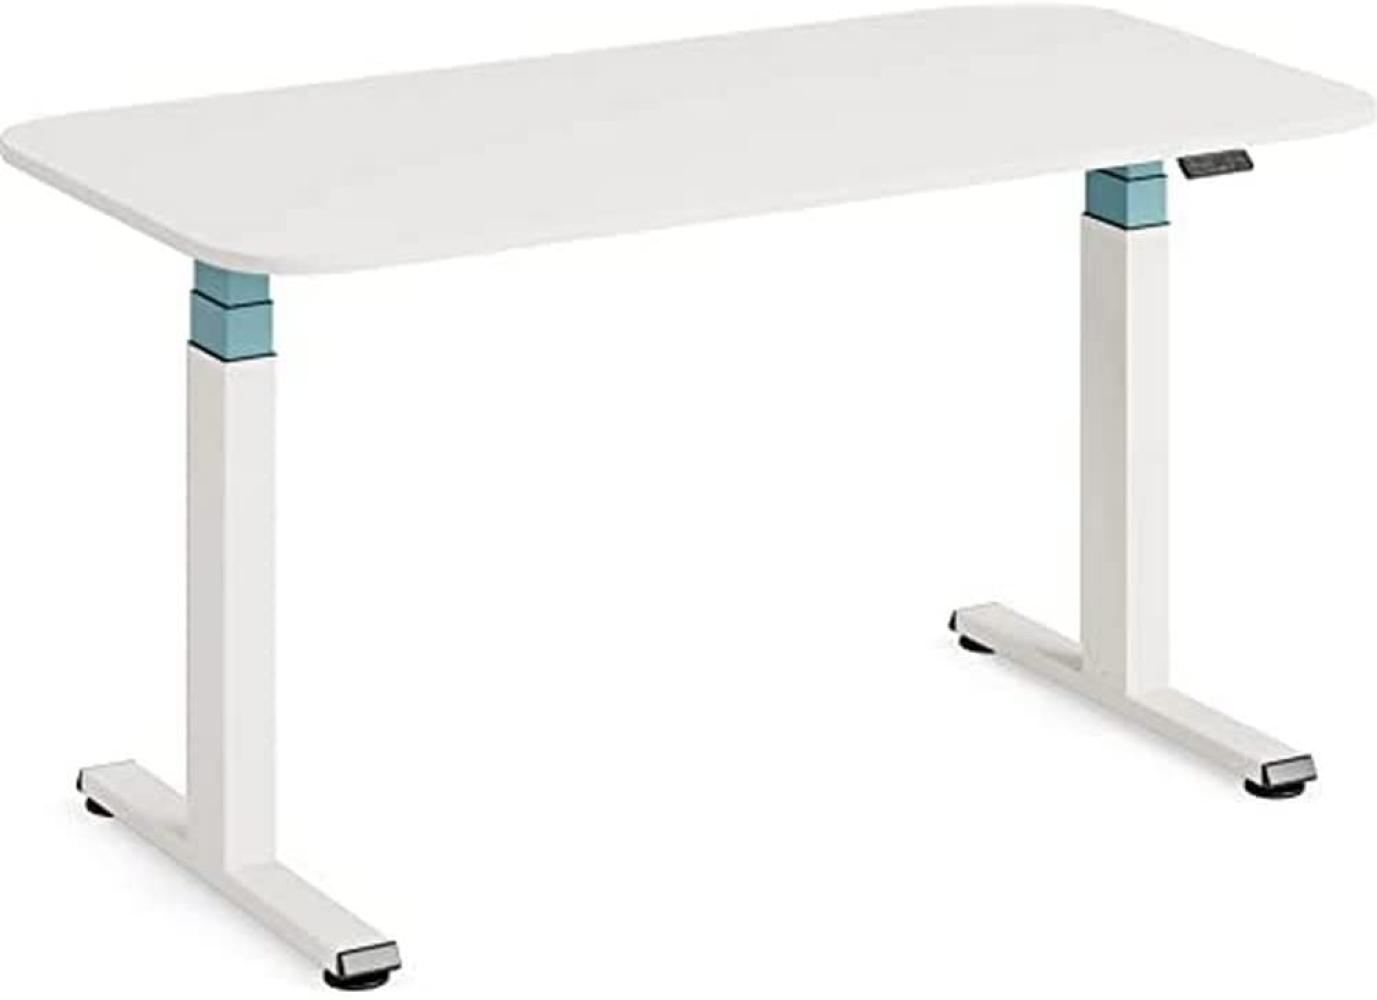 Steelcase Solo höhenverstellbarer Sitz-Steh-Schreibtisch mit Tischplatte in Snow und Gestell in Pearl Snow mit der Akzentfarbe Lagune (140 x 70 cm) Bild 1